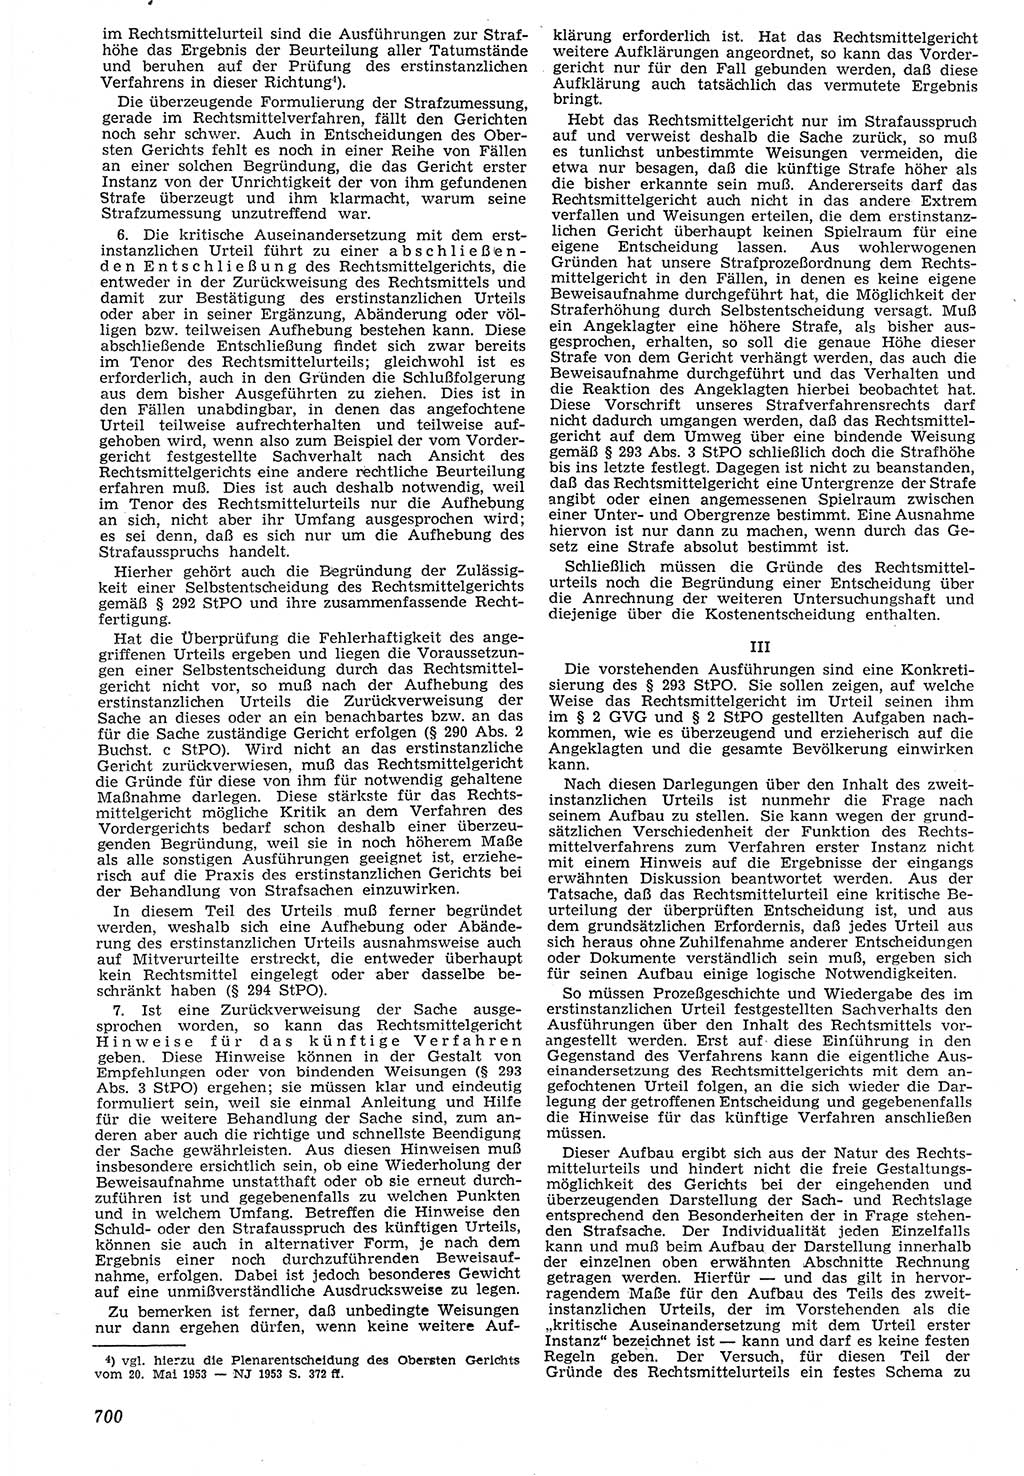 Neue Justiz (NJ), Zeitschrift für Recht und Rechtswissenschaft [Deutsche Demokratische Republik (DDR)], 7. Jahrgang 1953, Seite 700 (NJ DDR 1953, S. 700)